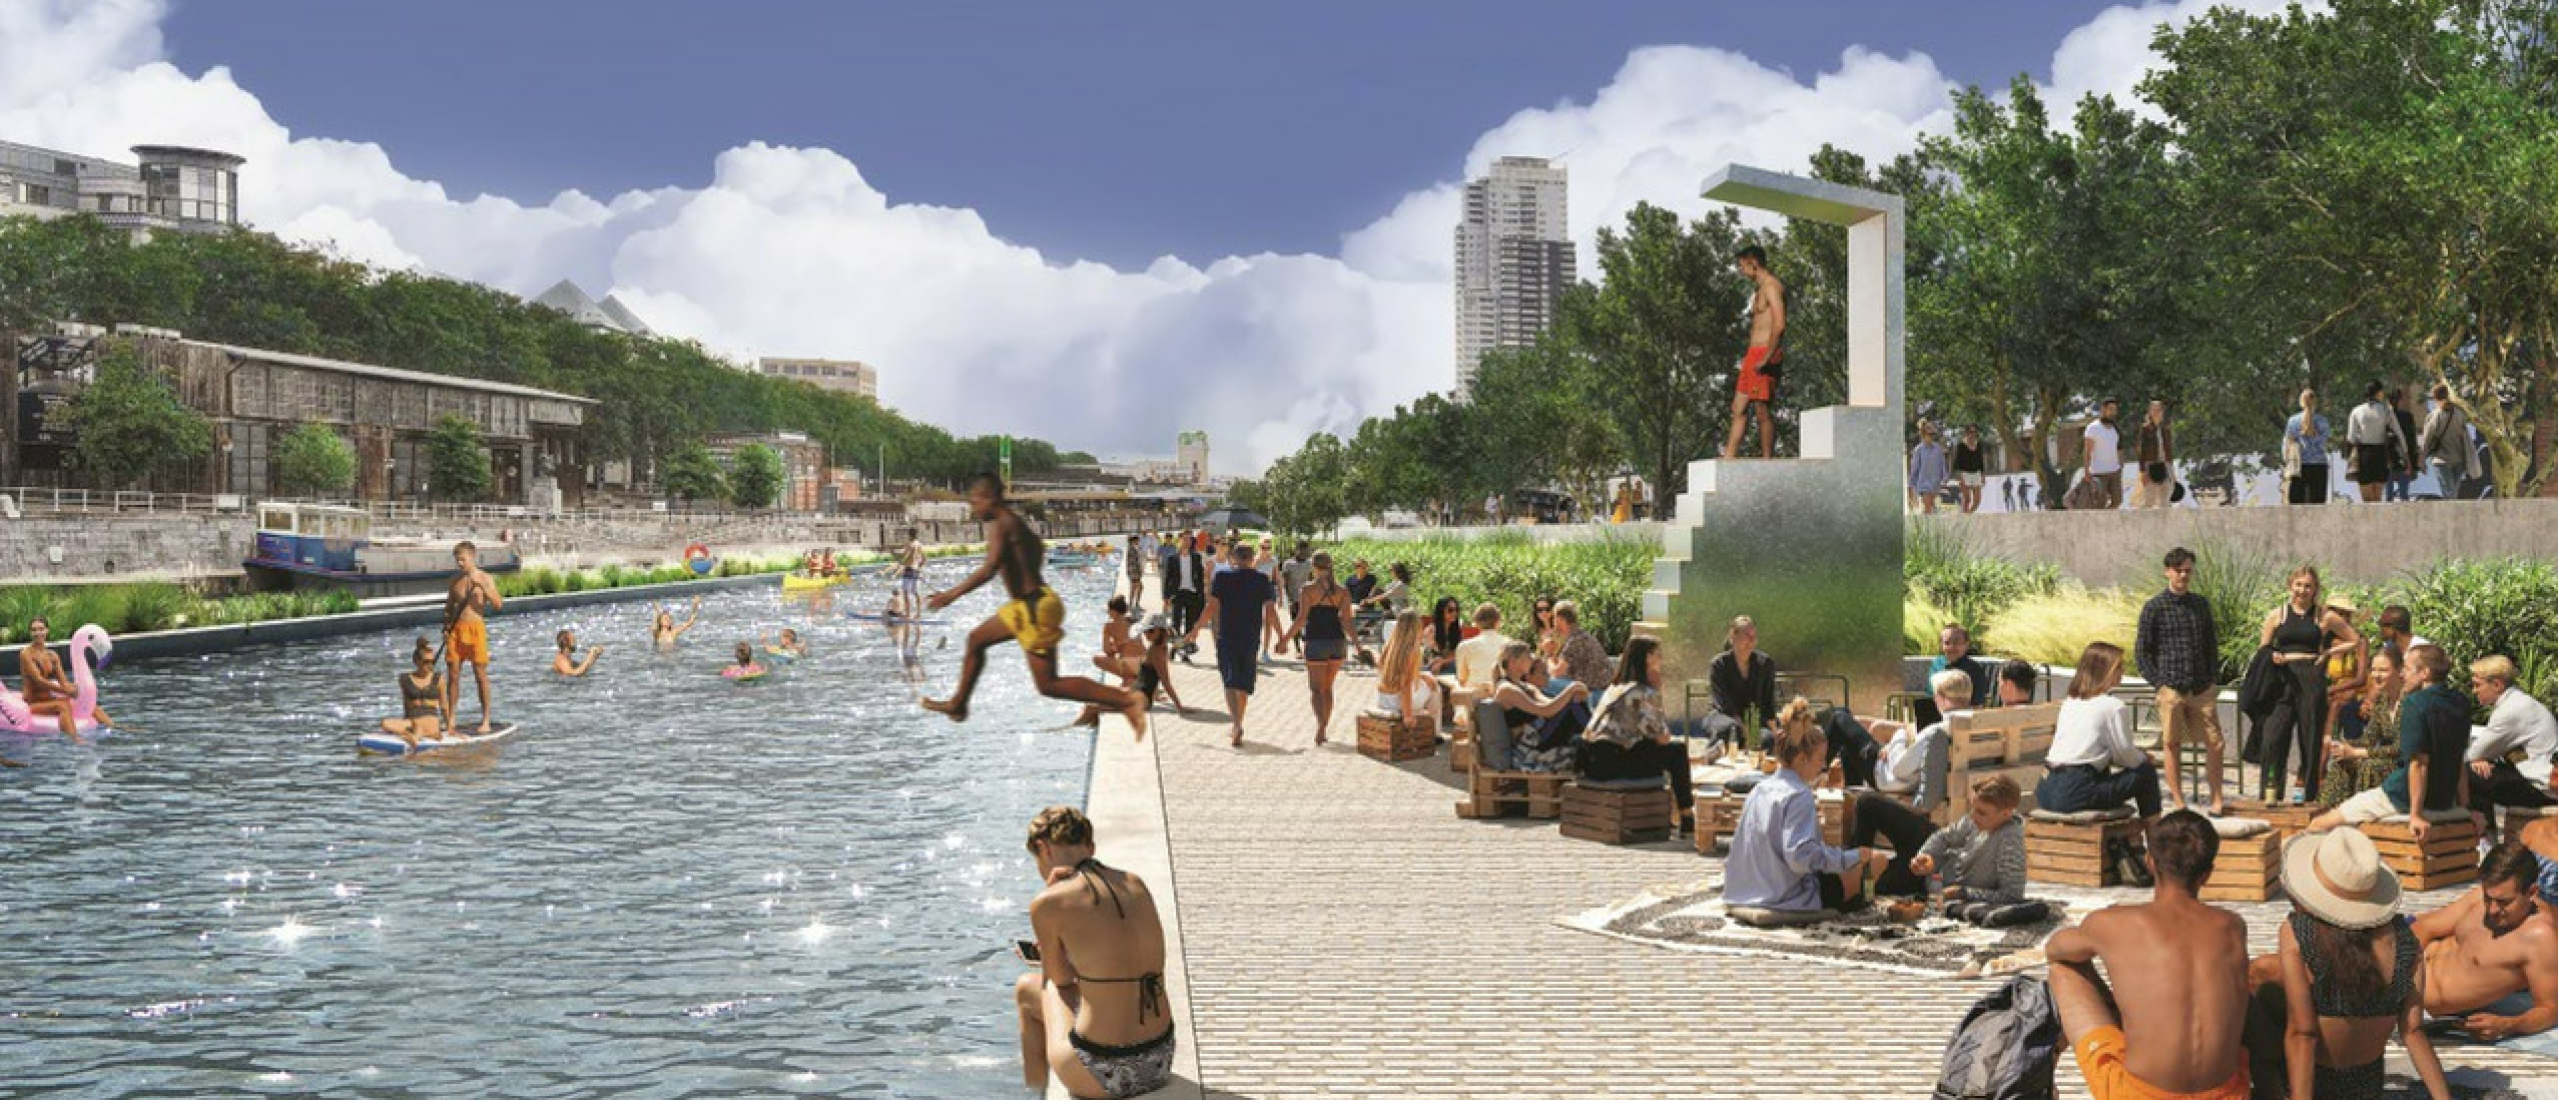 Stad wil openbaar zwembad van 355 meter lang bouwen in kanaal